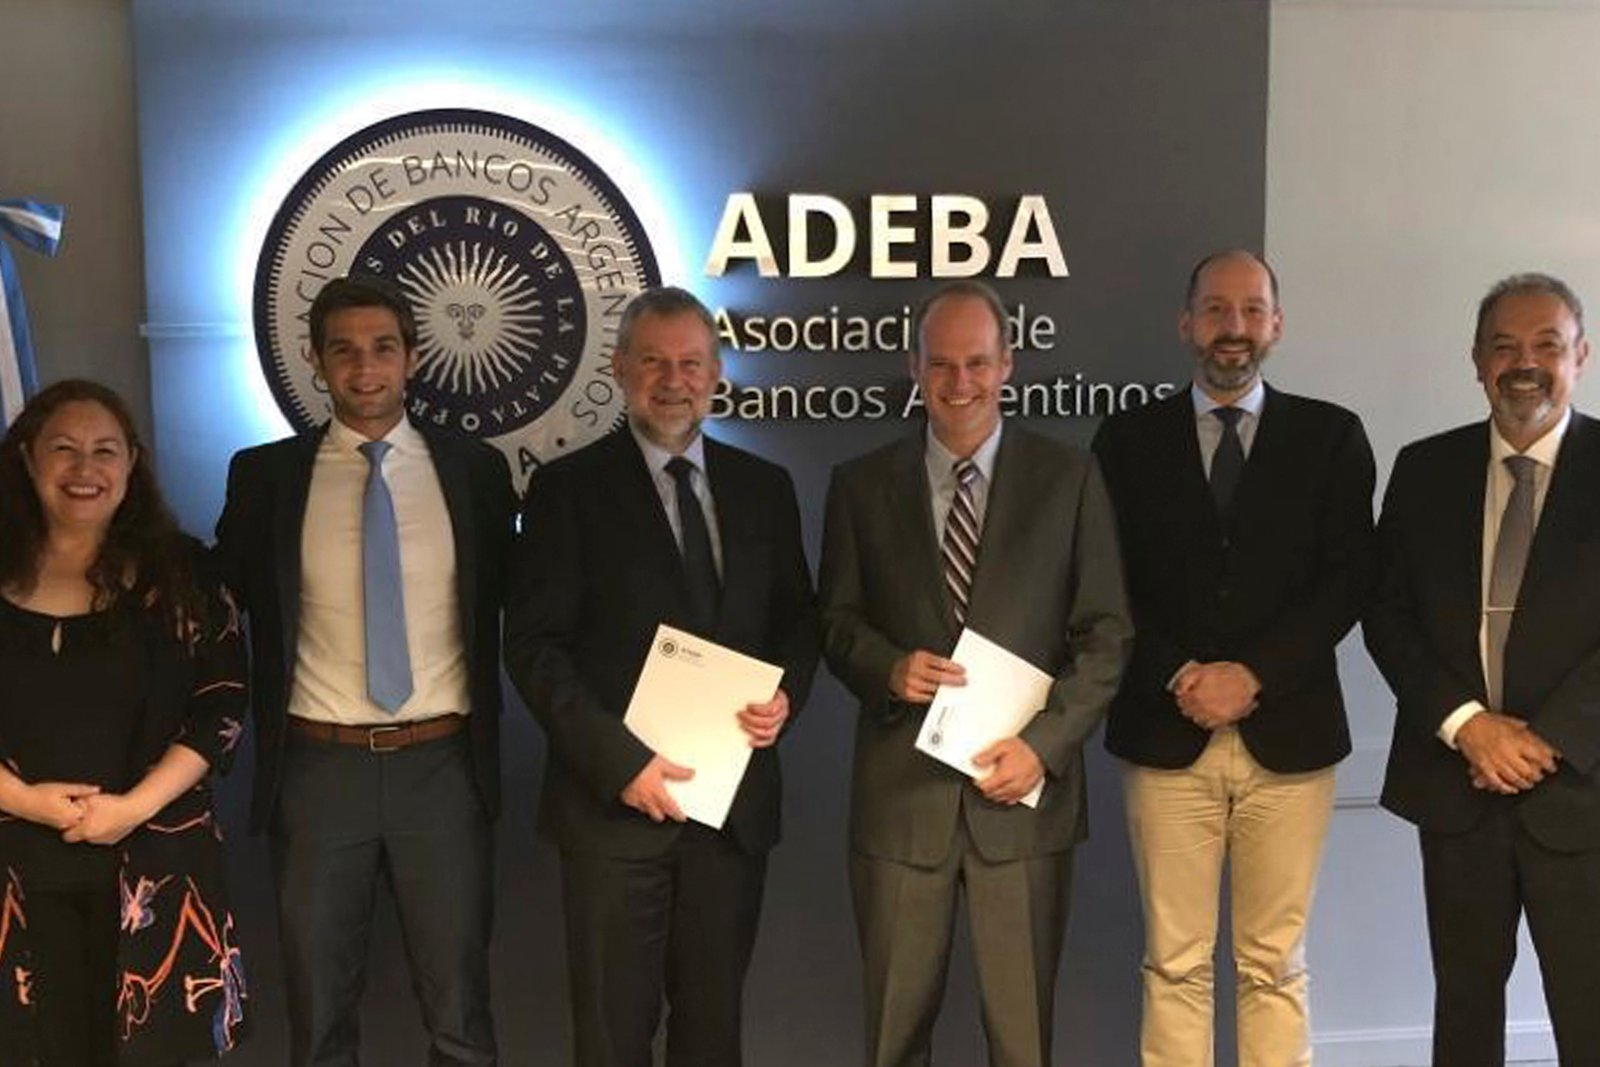 ADEBA firmó un convenio con la Fundación Alemana para la Cooperación Internacional, para impulsar la inclusión financiera.